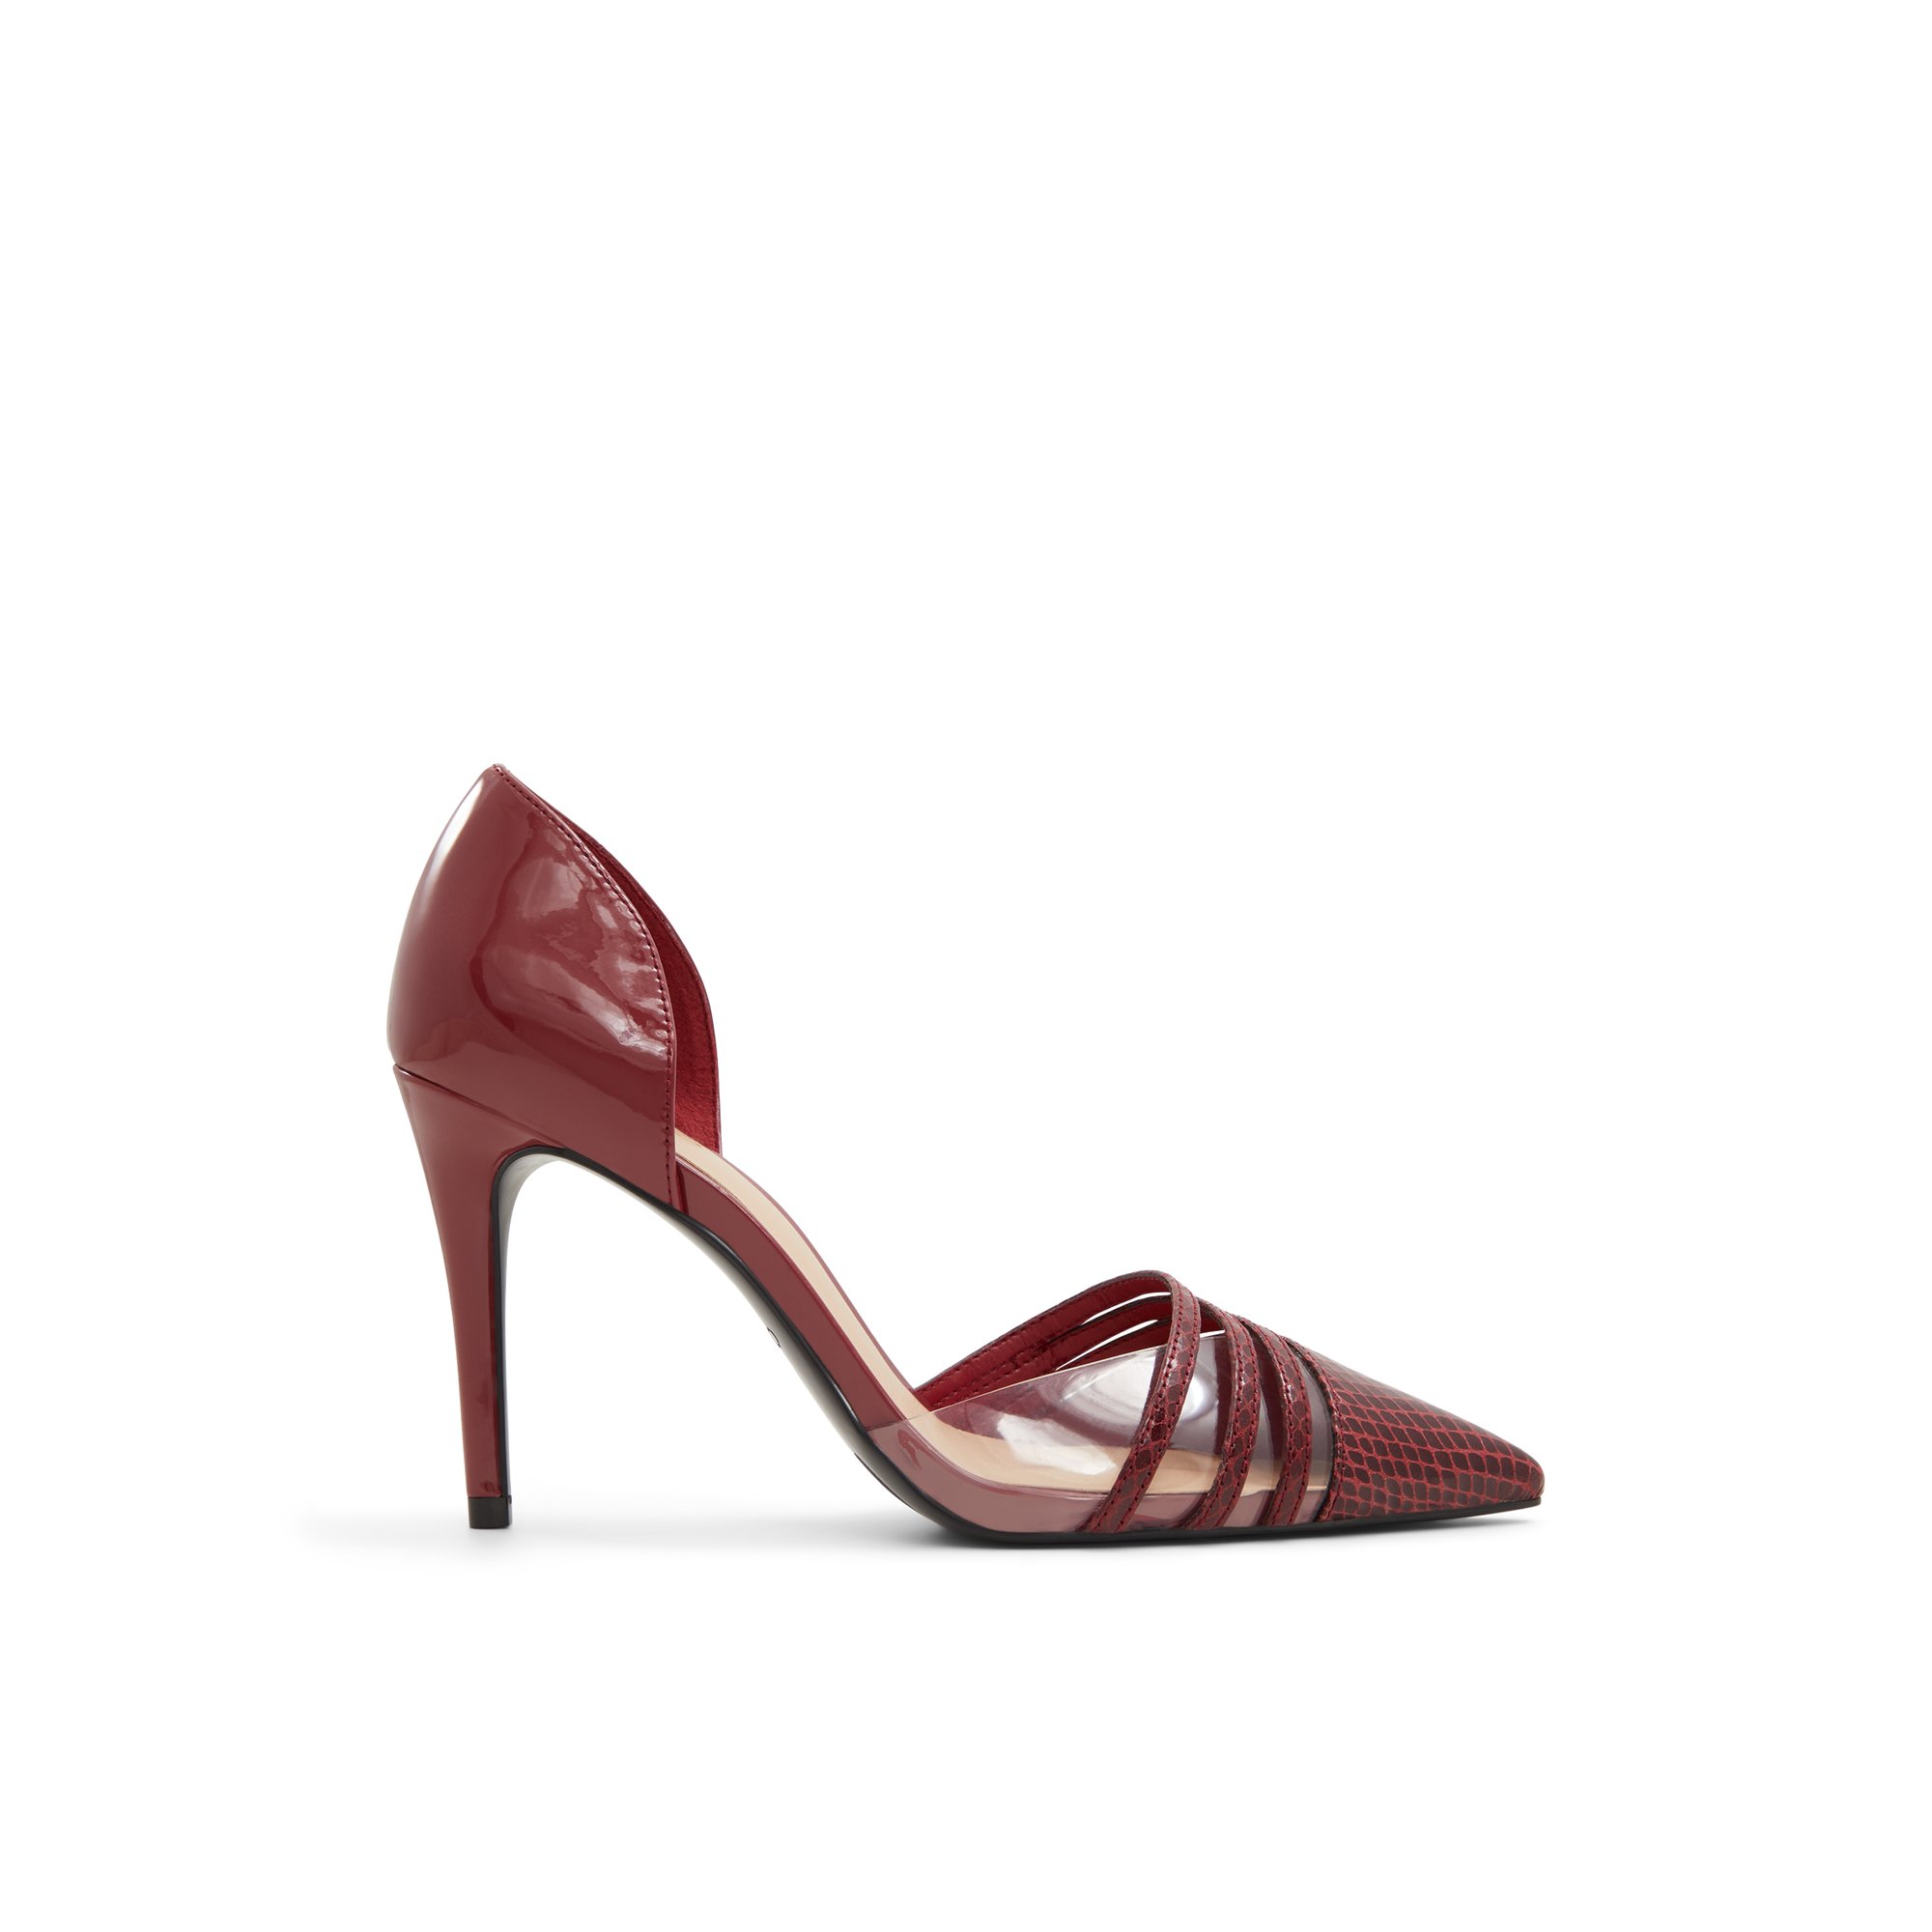 ALDO Caryy - Women's Heels Pumps - Red